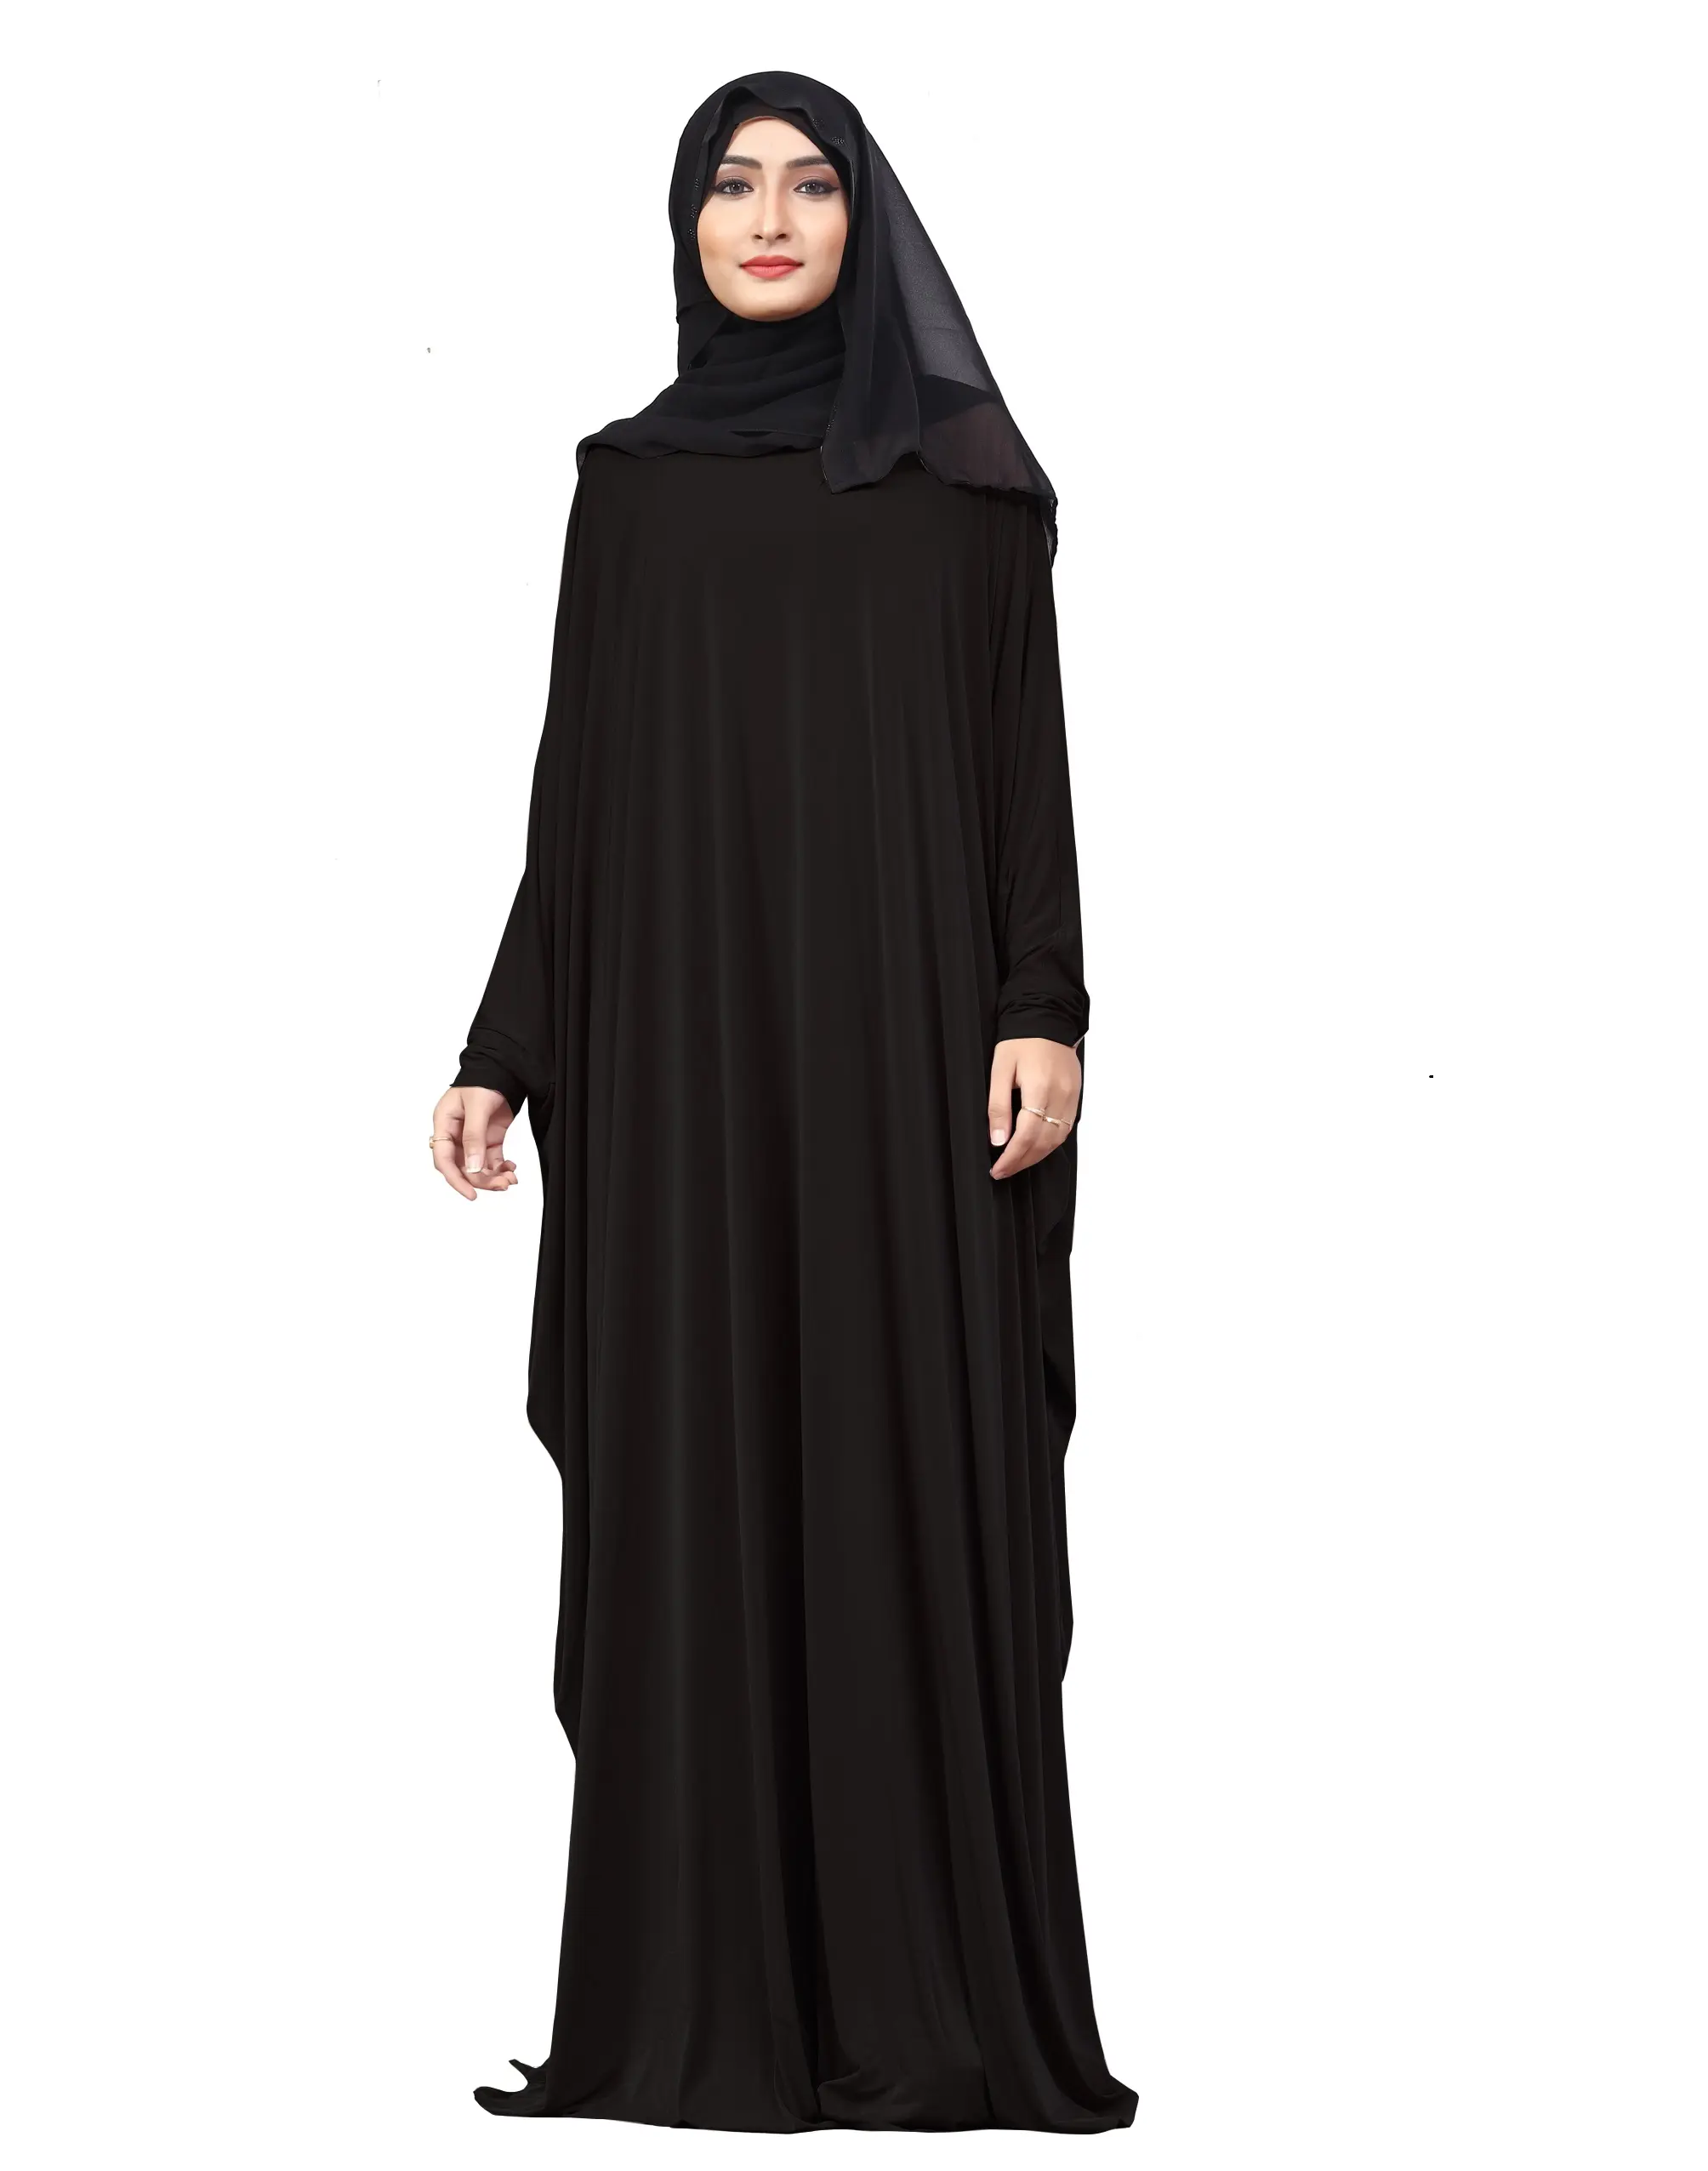 Siyah renk düz ücretsiz boyutu arapça Lykra Abaya şifon Dupatta ile kadınlar için